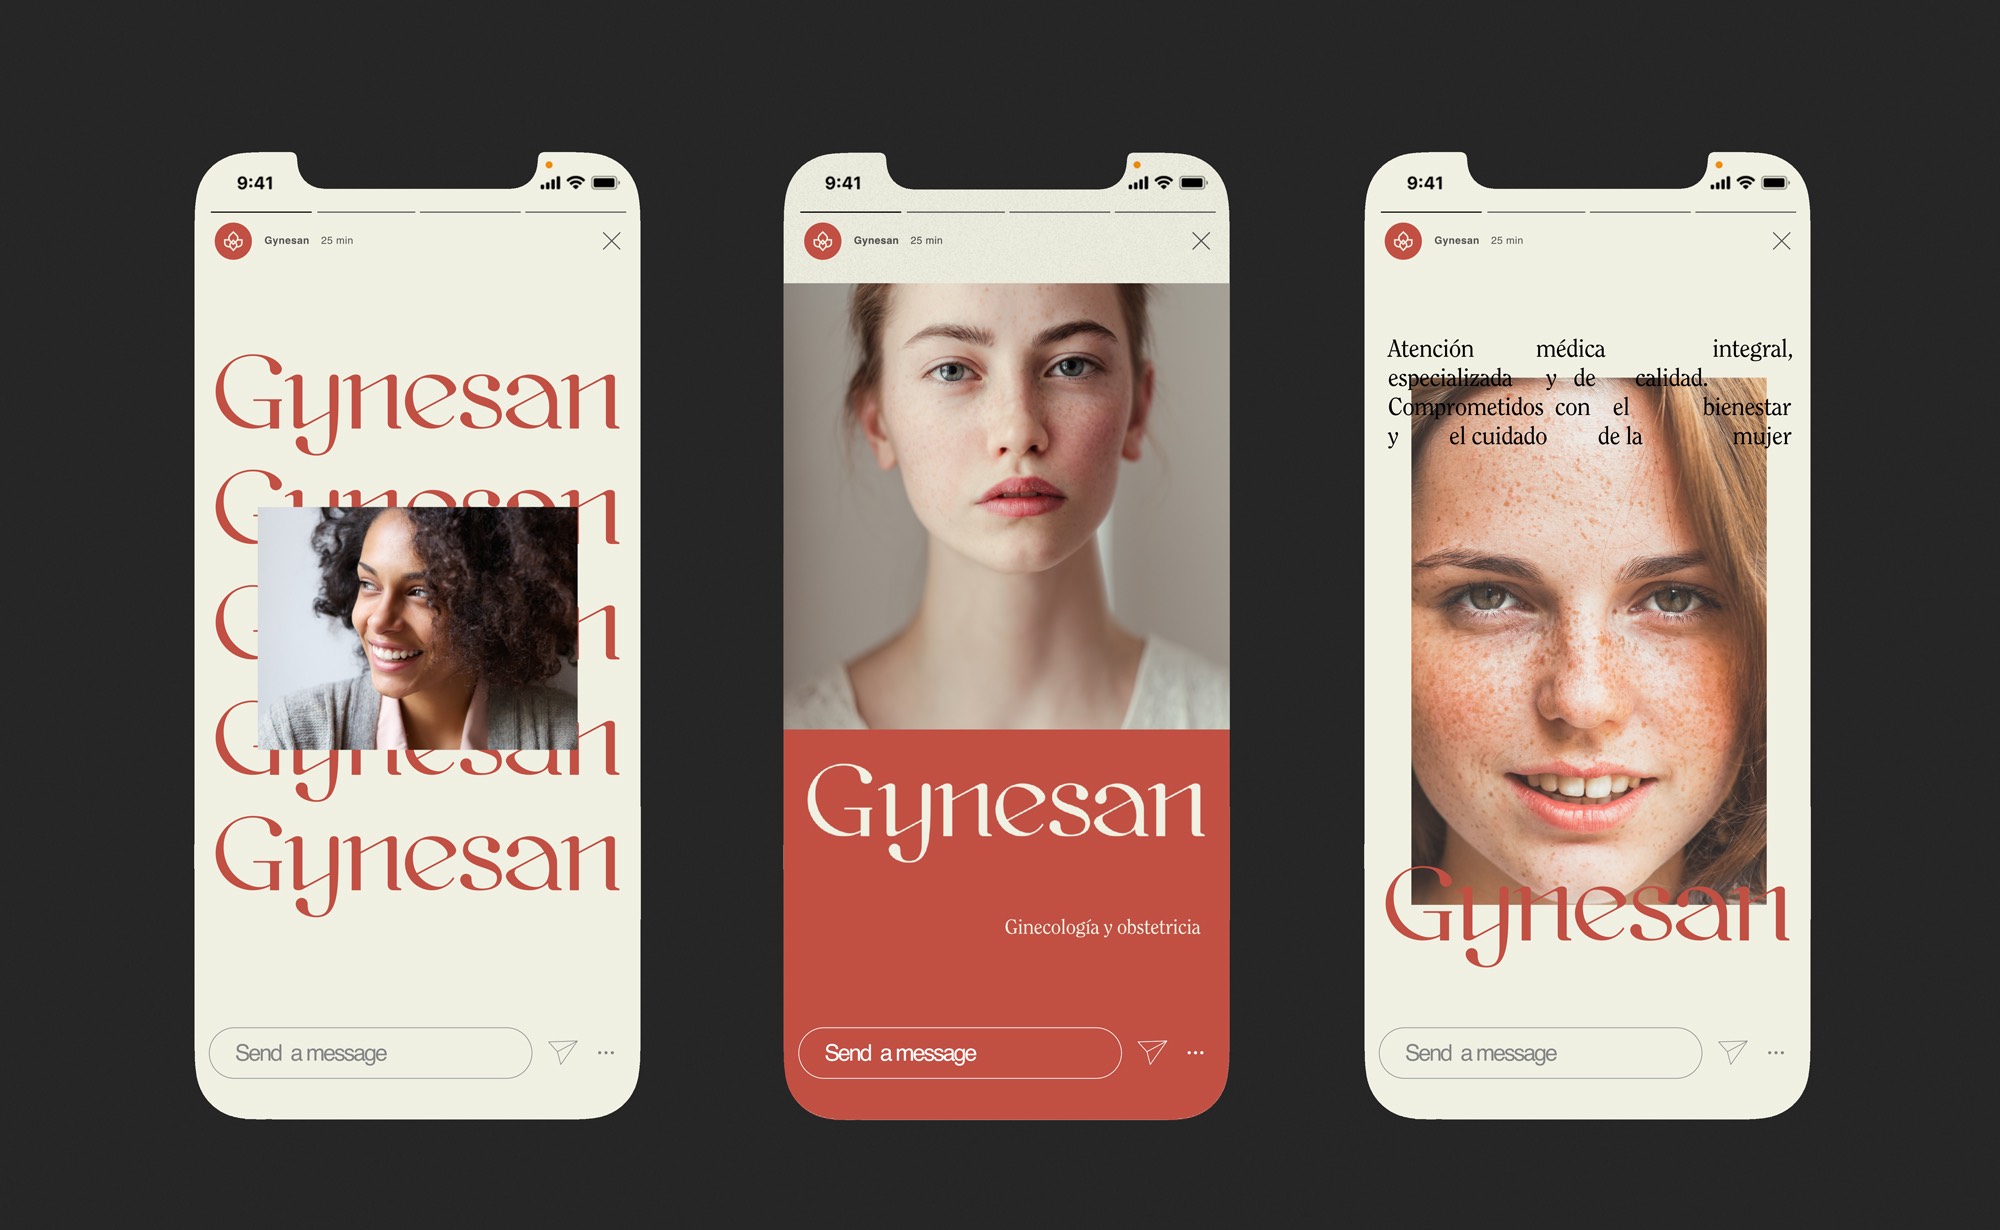 Diseño y desarrollo de identidad visual corporativa para Gynesan. Templates para instagram stories.